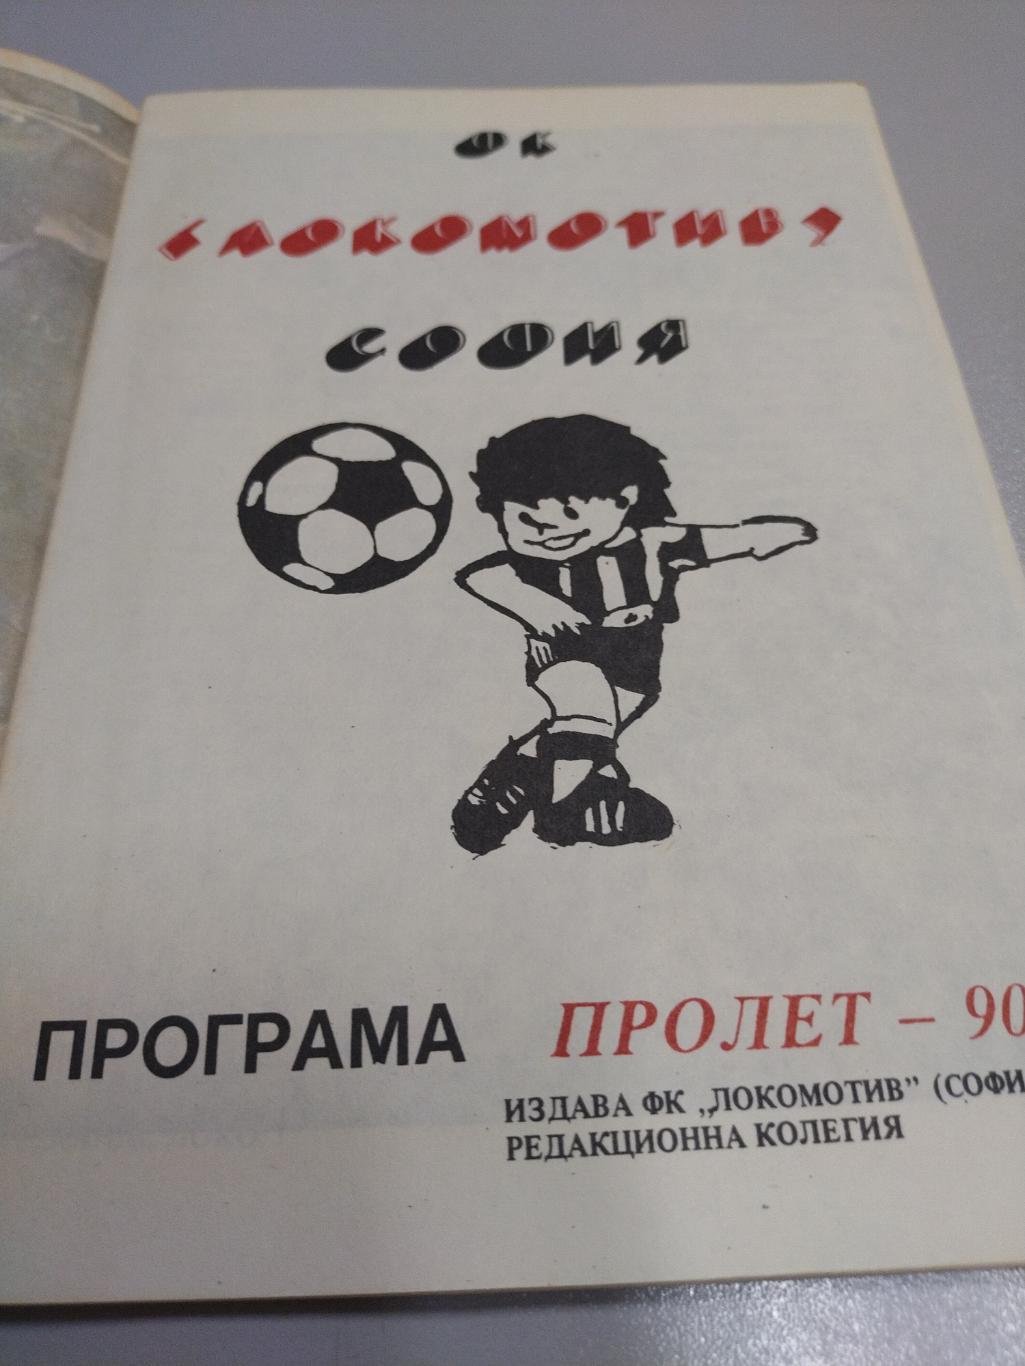 Календарь справочник по футболу локомотив София 1990 1